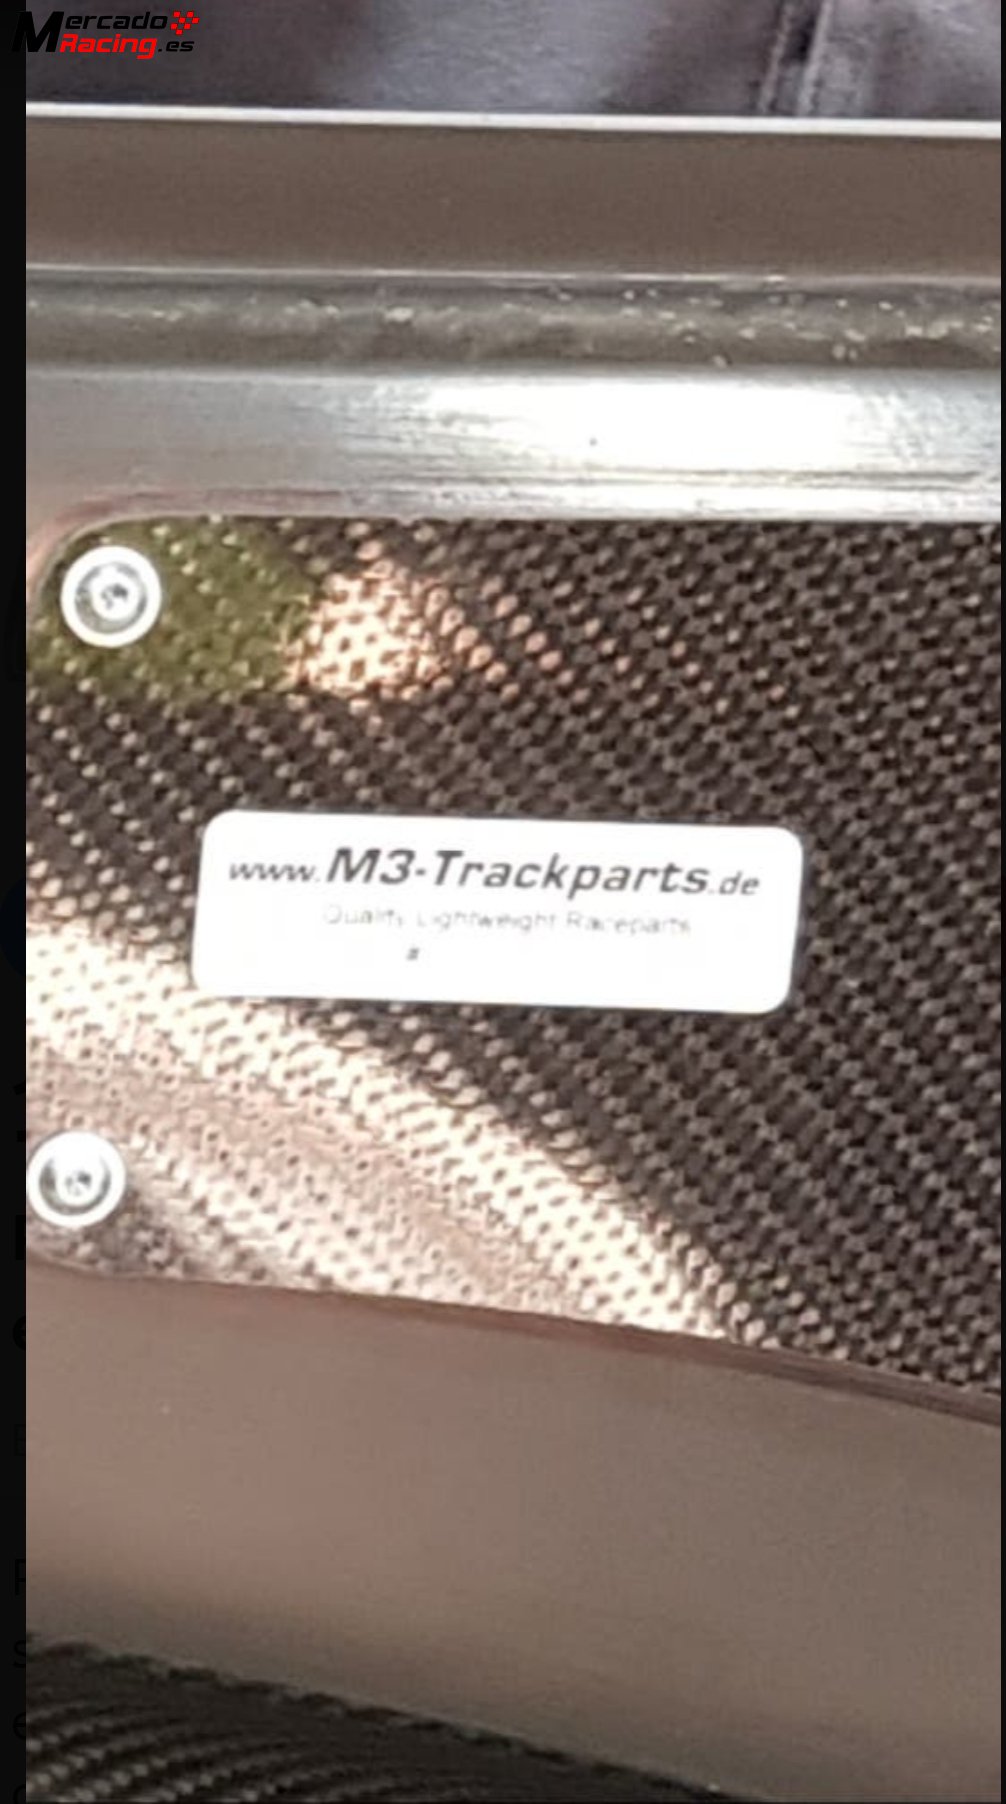 Puertas de carbono bmw e46 coupe nuevas (mk-trackparts.de)